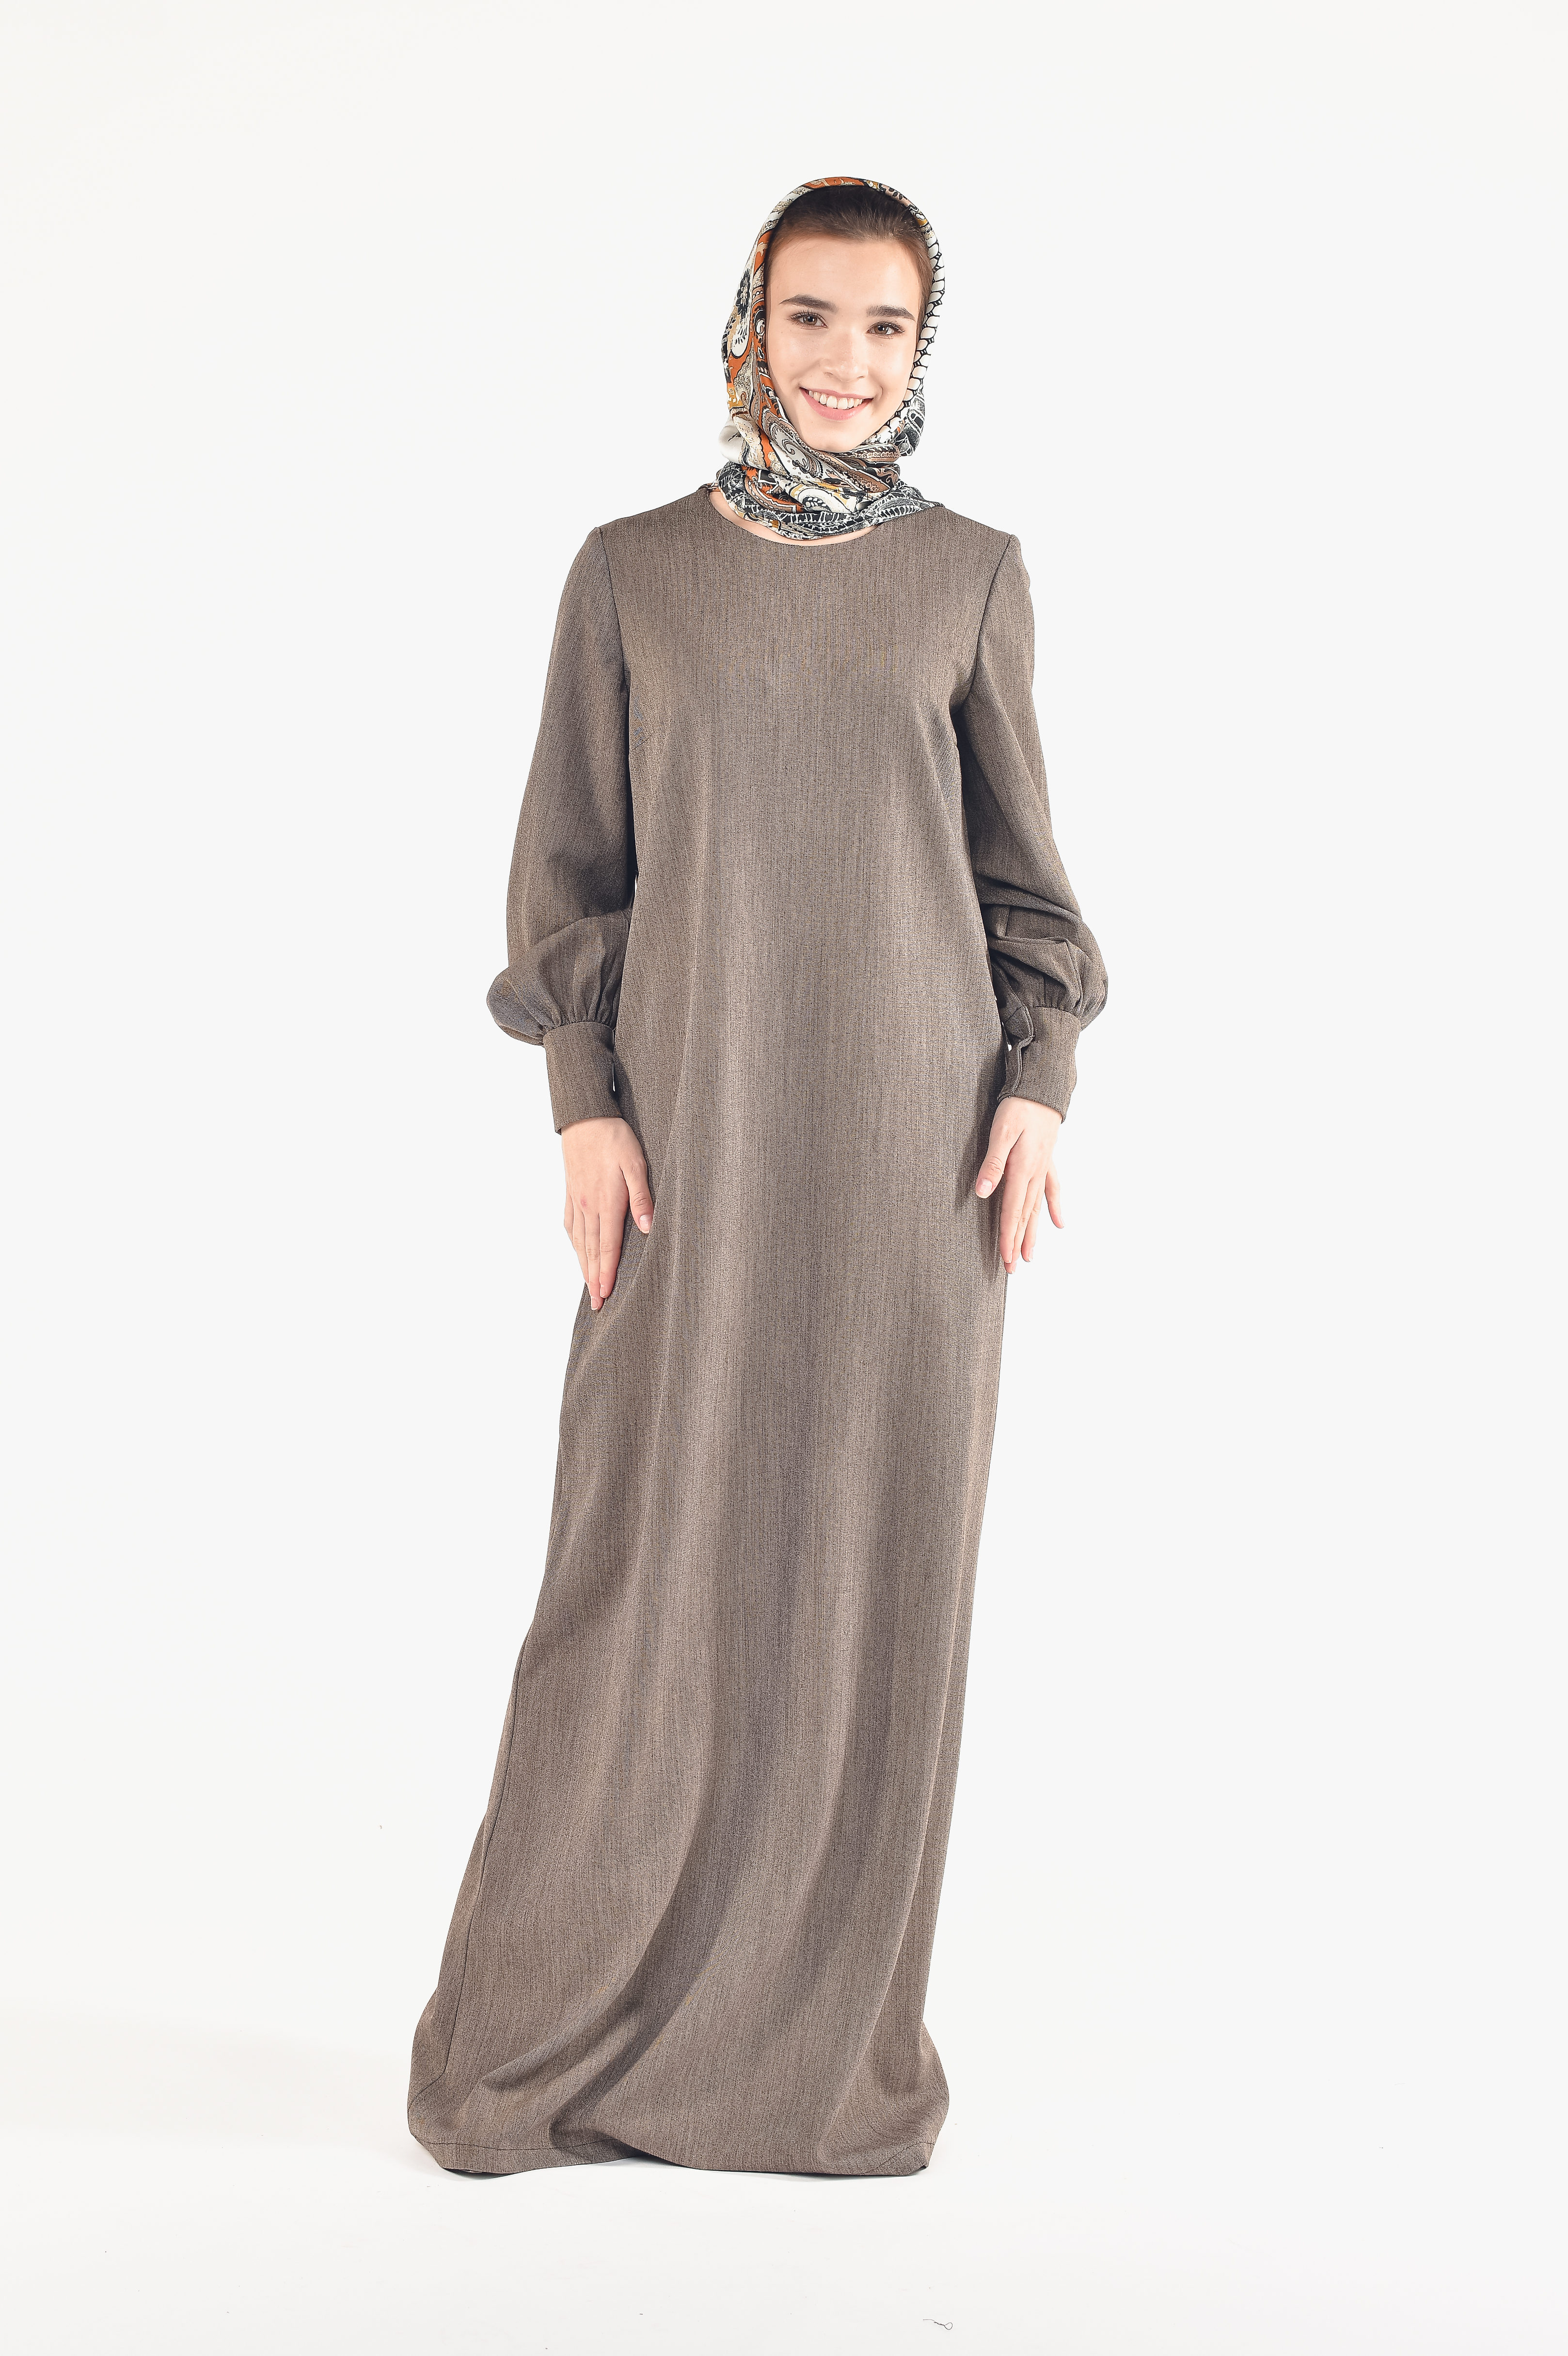 Арабские Платья Для Женщин Интернет Магазин